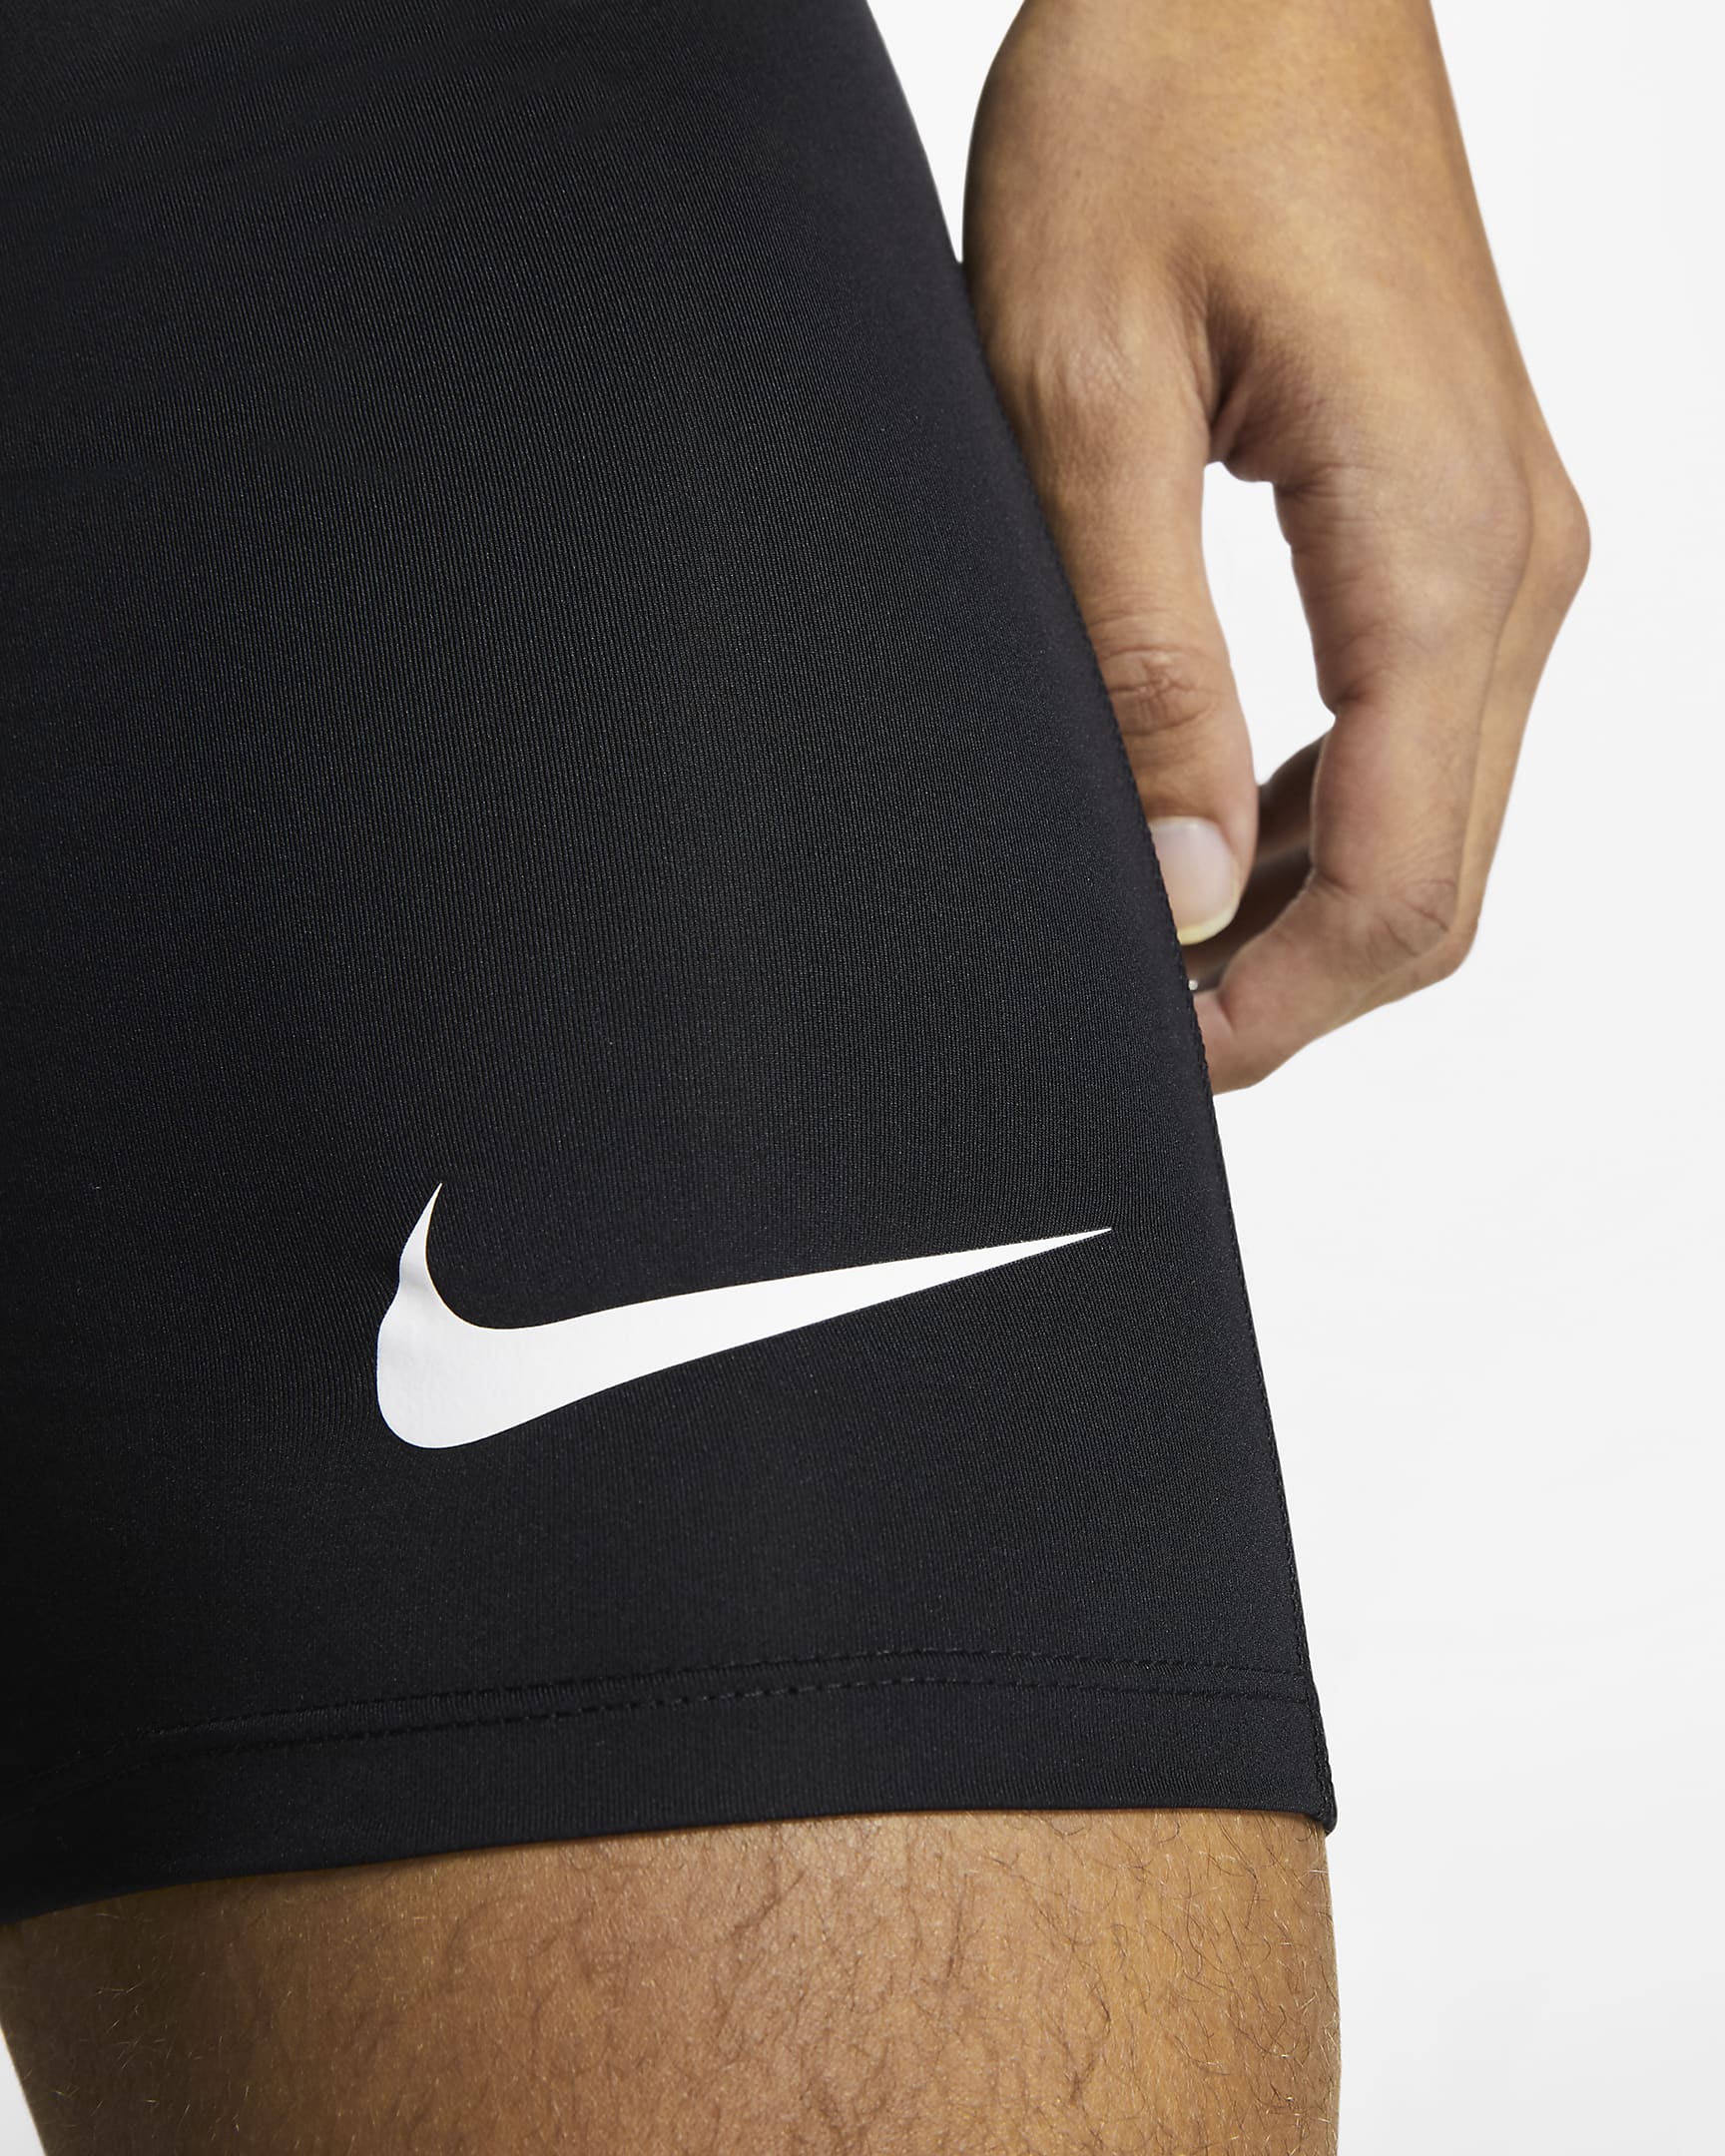 Nike Pro Men's Shorts - Black/White